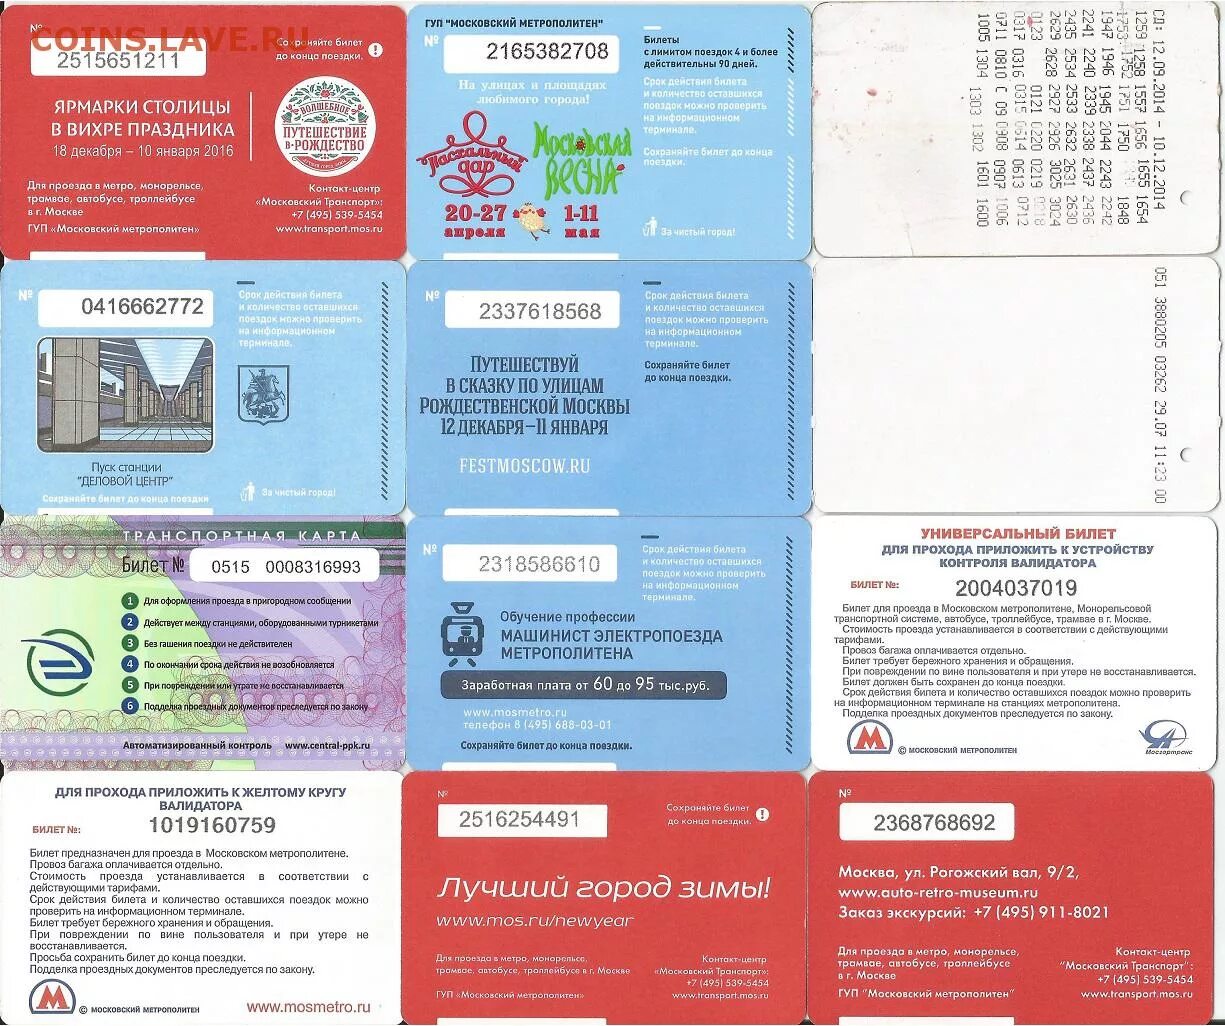 Карта москвича стоимость проезда. Универсальный билет. Абонемент на электричку. Льготный билет в метро. Разовый билет по социальной карте на электричку.